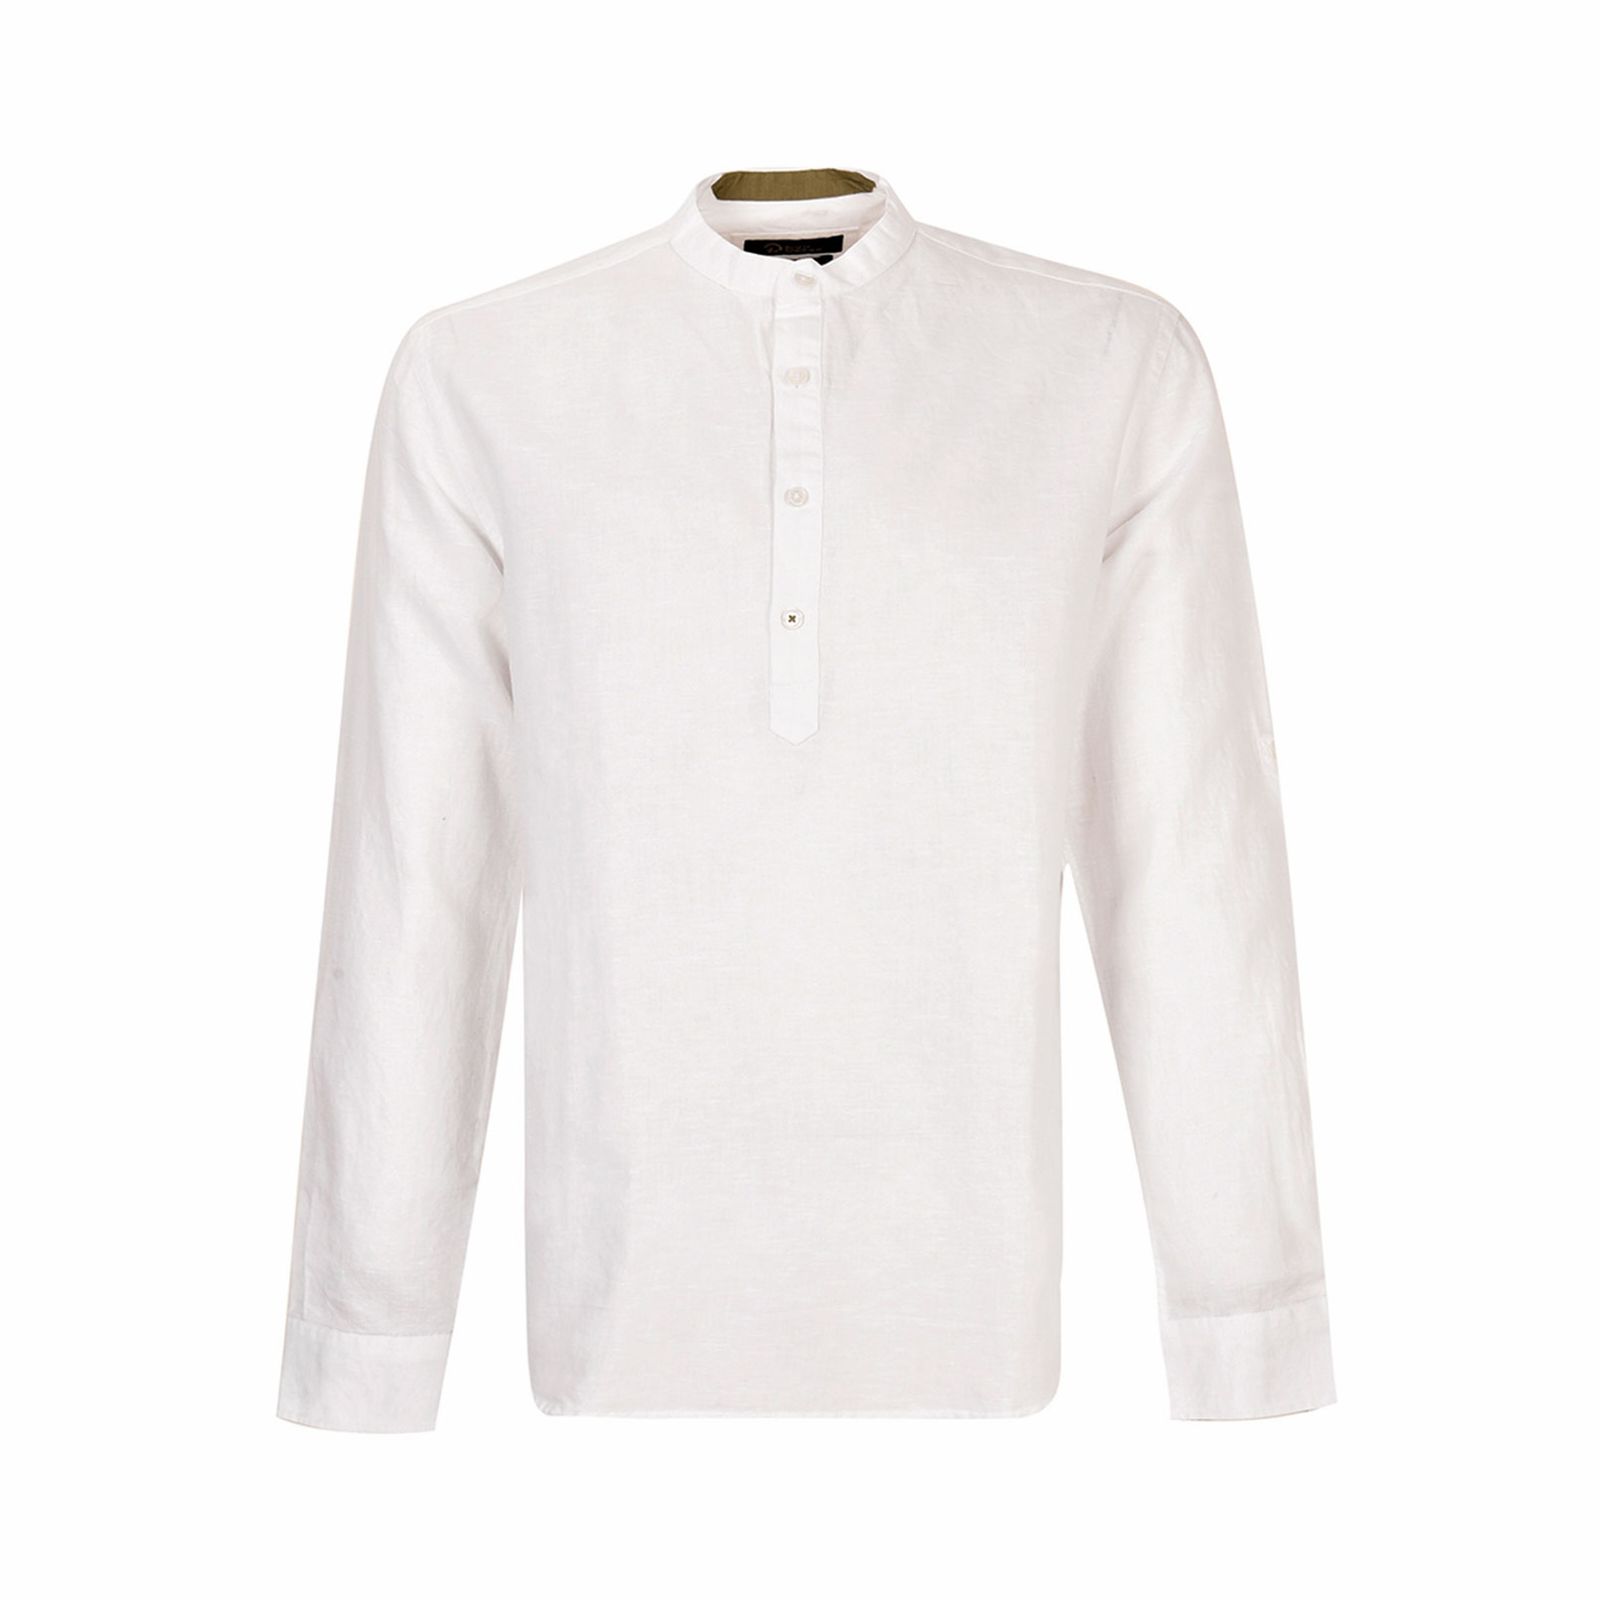 پیراهن آستین بلند مردانه بادی اسپینر مدل 4195 کد 2 رنگ سفید -  - 1